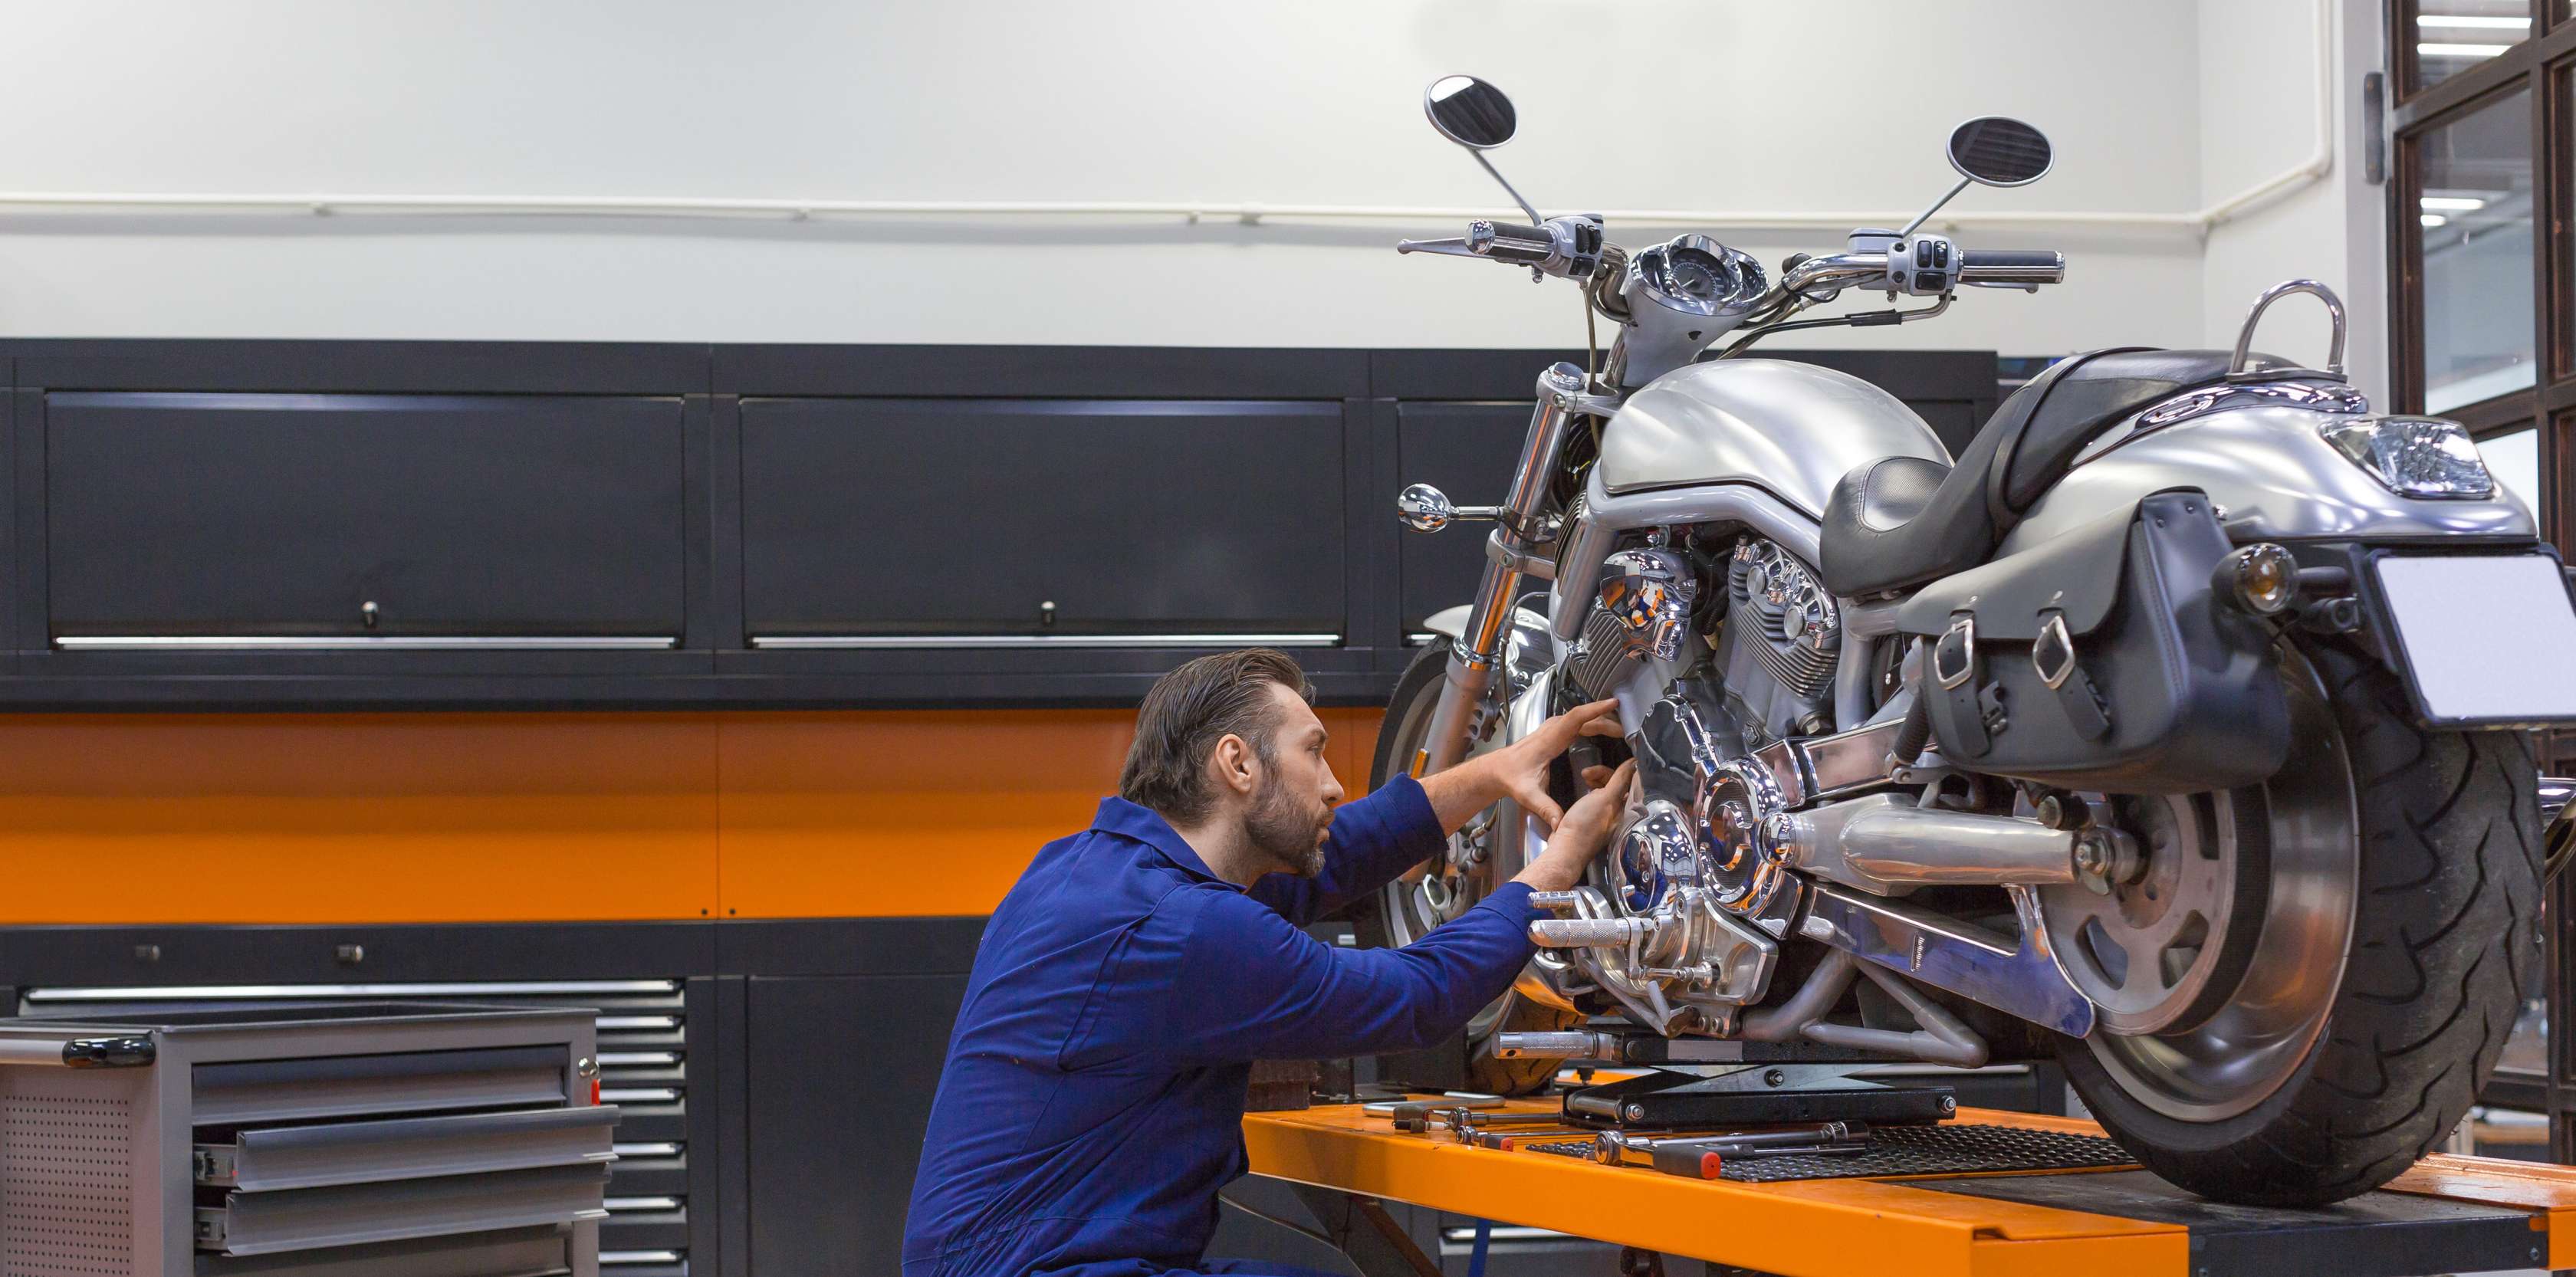 Motorschaden bei Vollkasko: Motorrad steht in Werkstatt und wird von Mechaniker bearbeitet